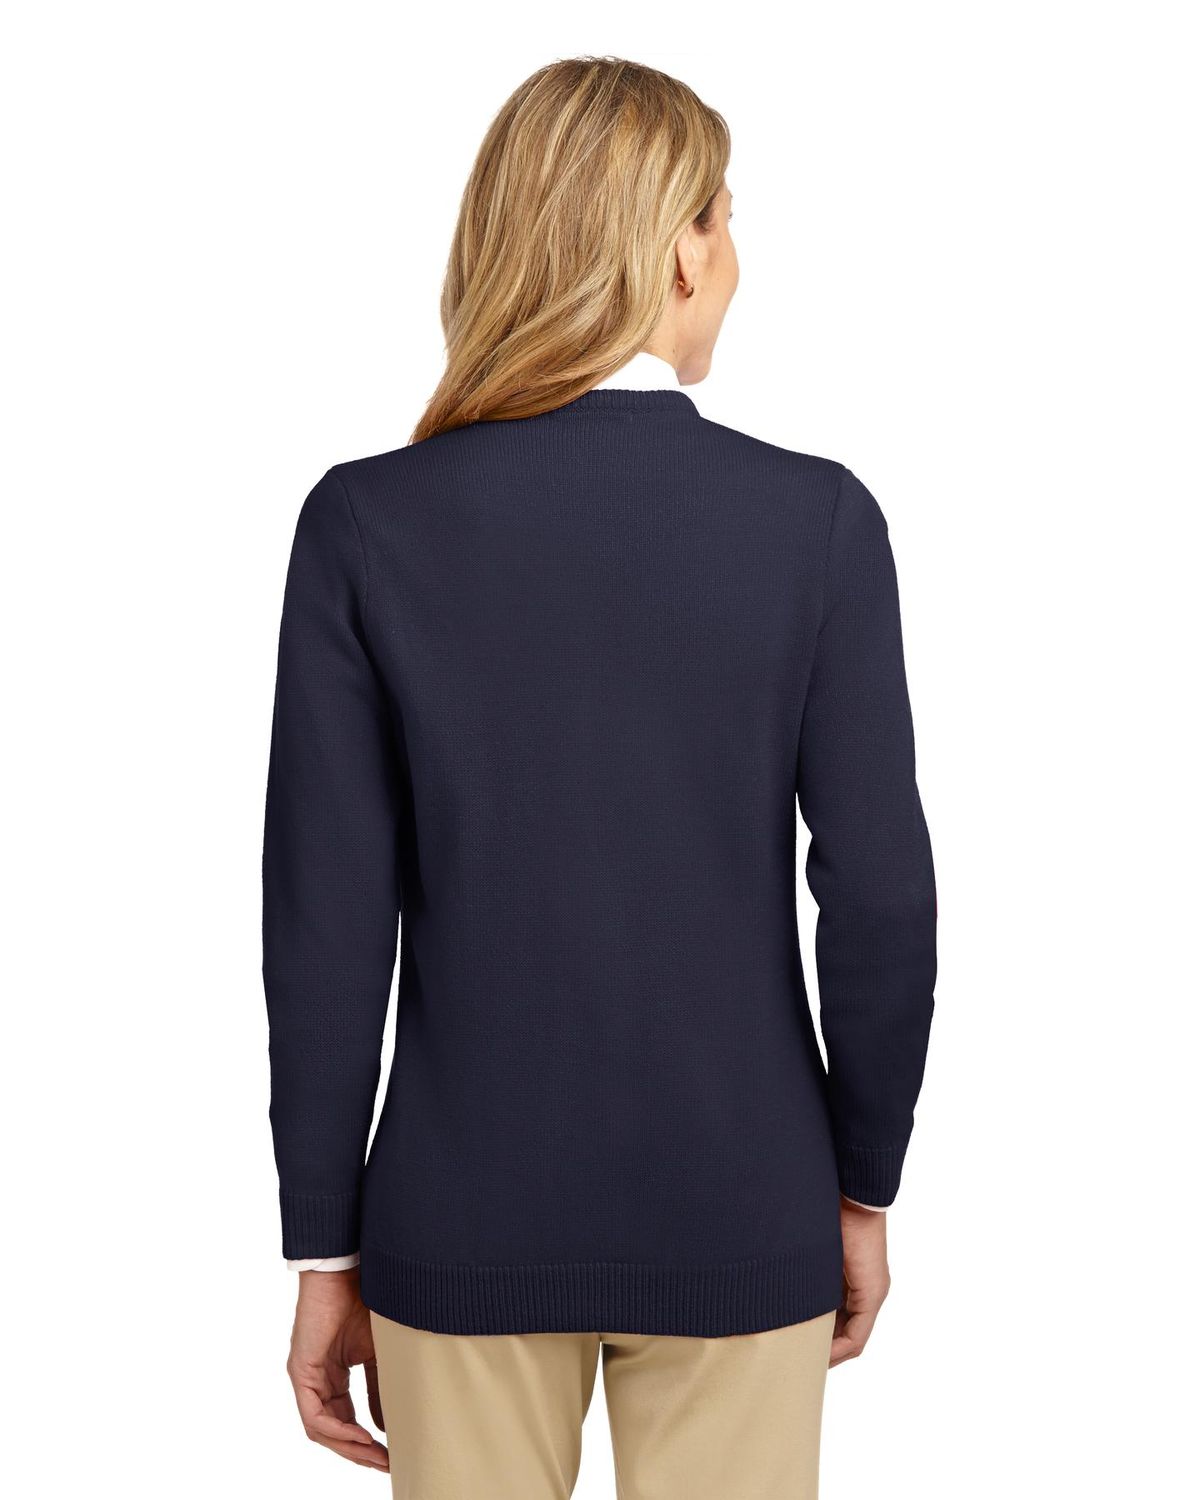 'Port Authority LSW304 Ladies Value Jewel-Neck Cardigan Sweater'